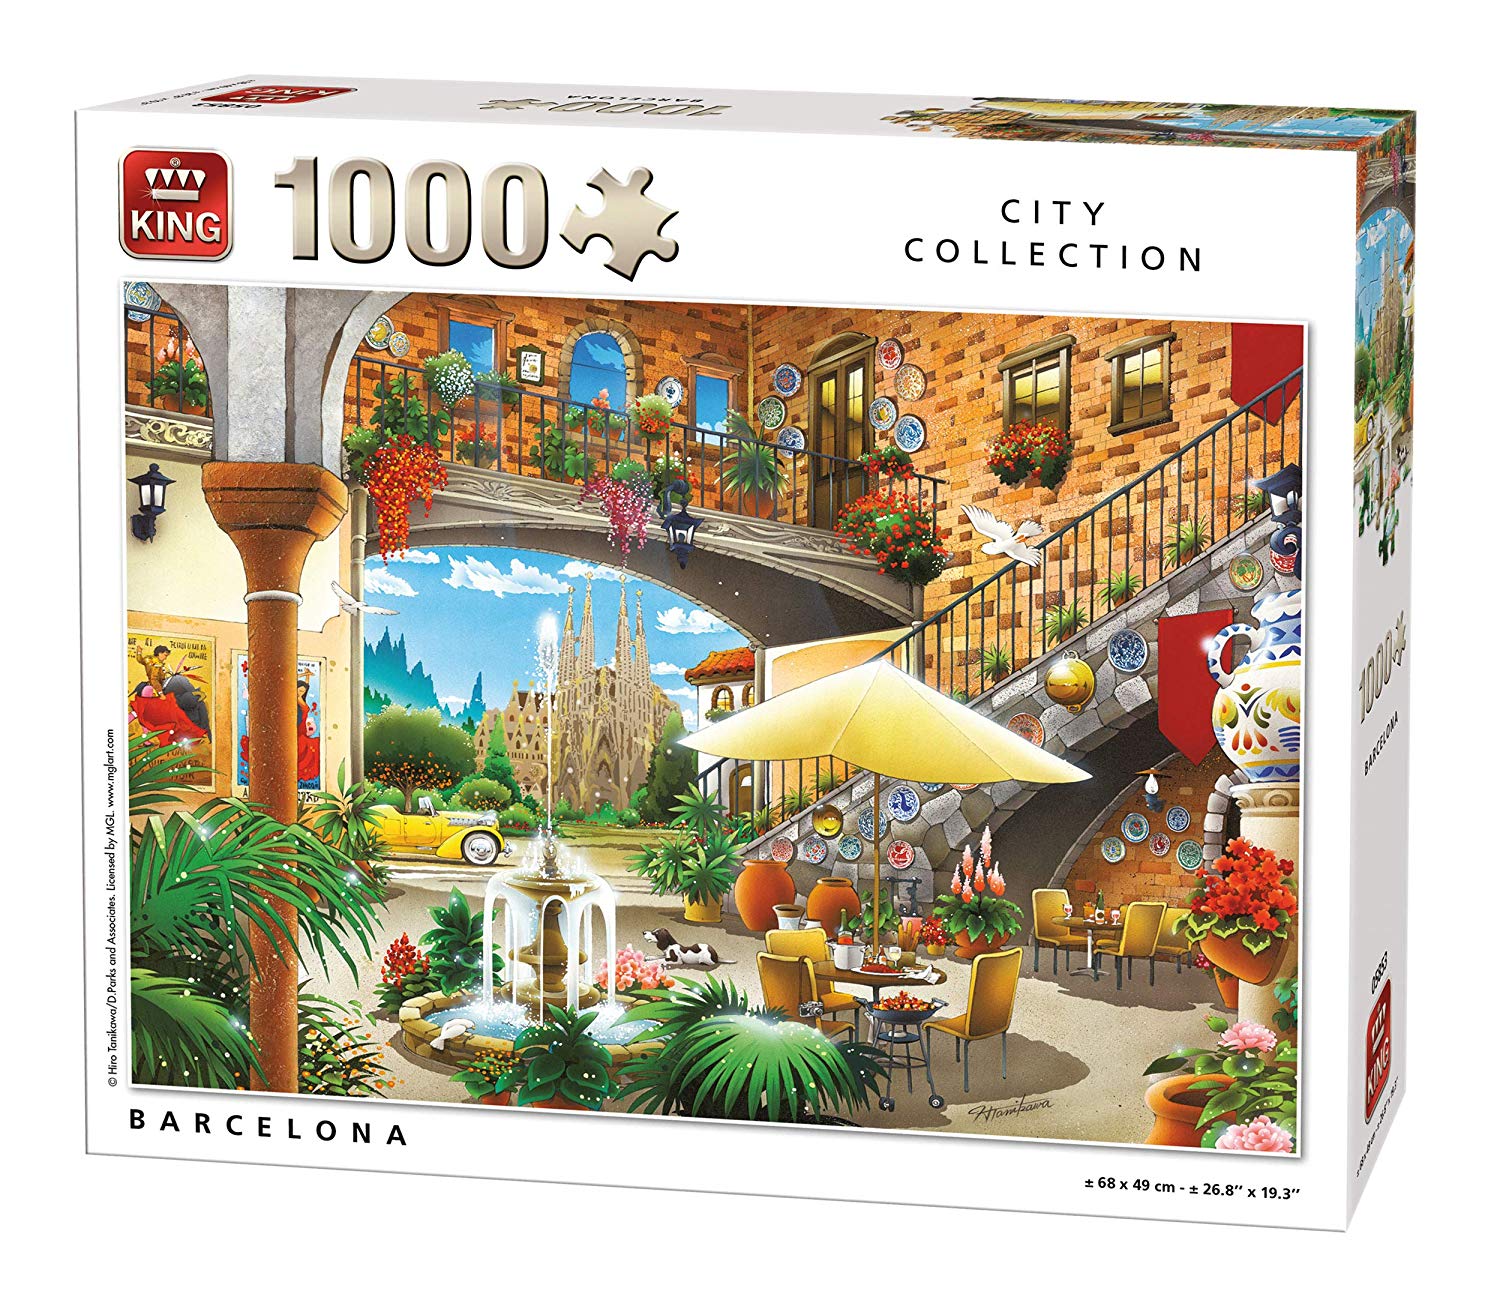 King 55853 Puzzle Barcelona 1000 Pieces Full Colour 68 X 49 Cm